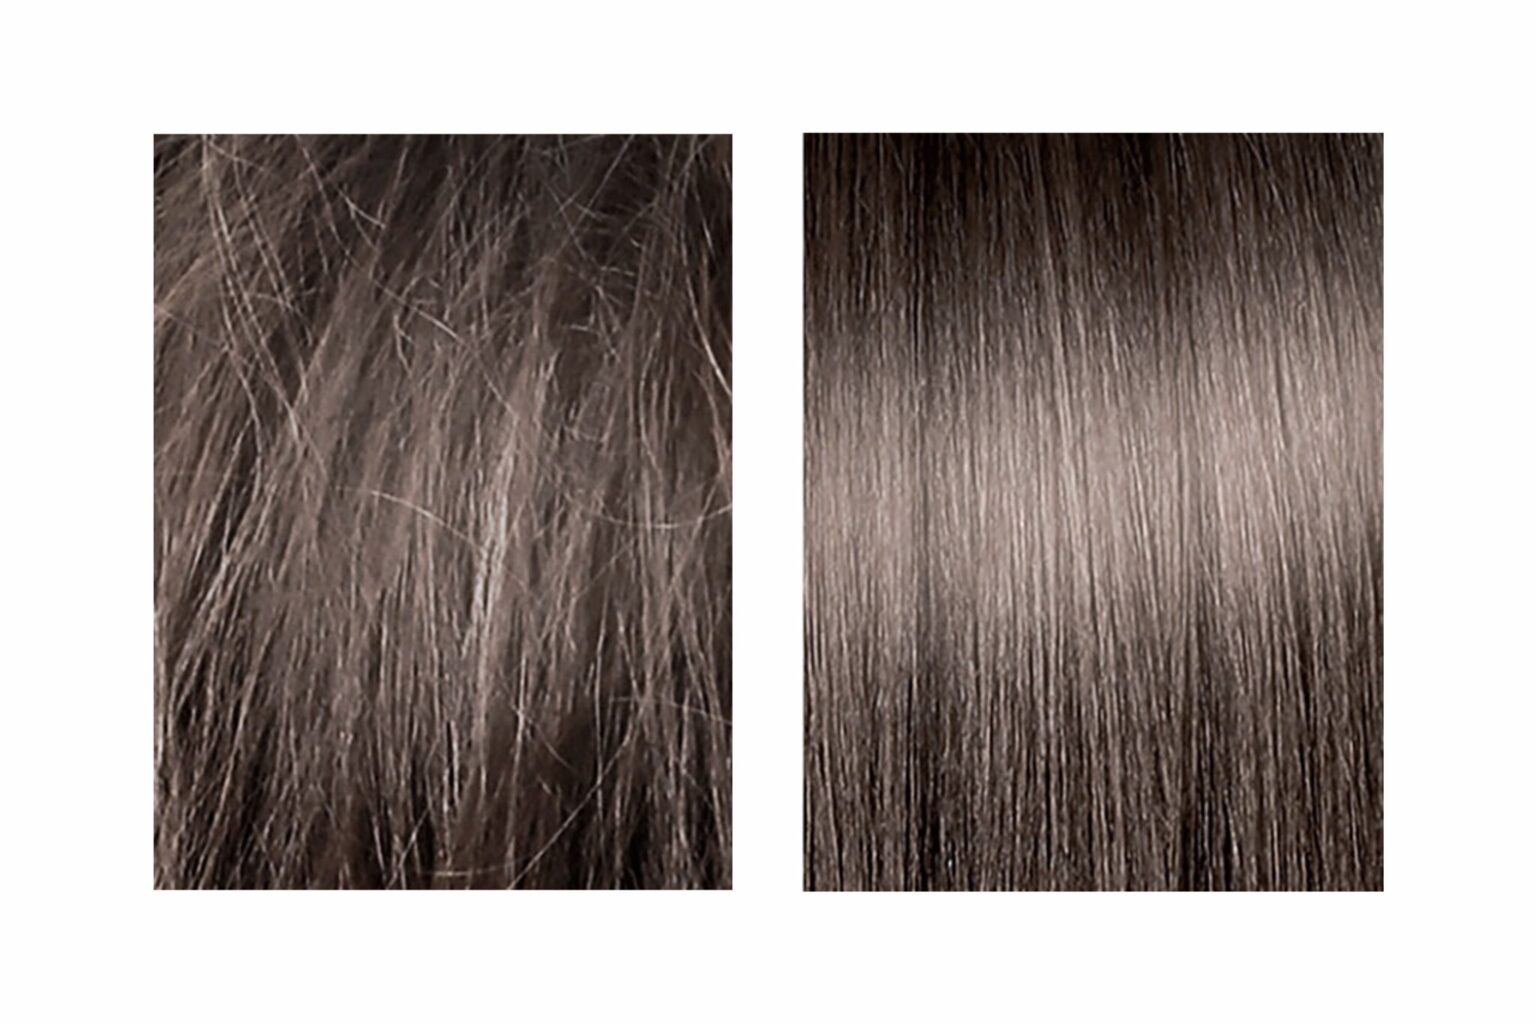 キメが整った髪の状態（右）とキメが整っていない髪の状態（左）のイメージ画像。髪のキメが整うだけで、まとまり感に圧倒的な差が。